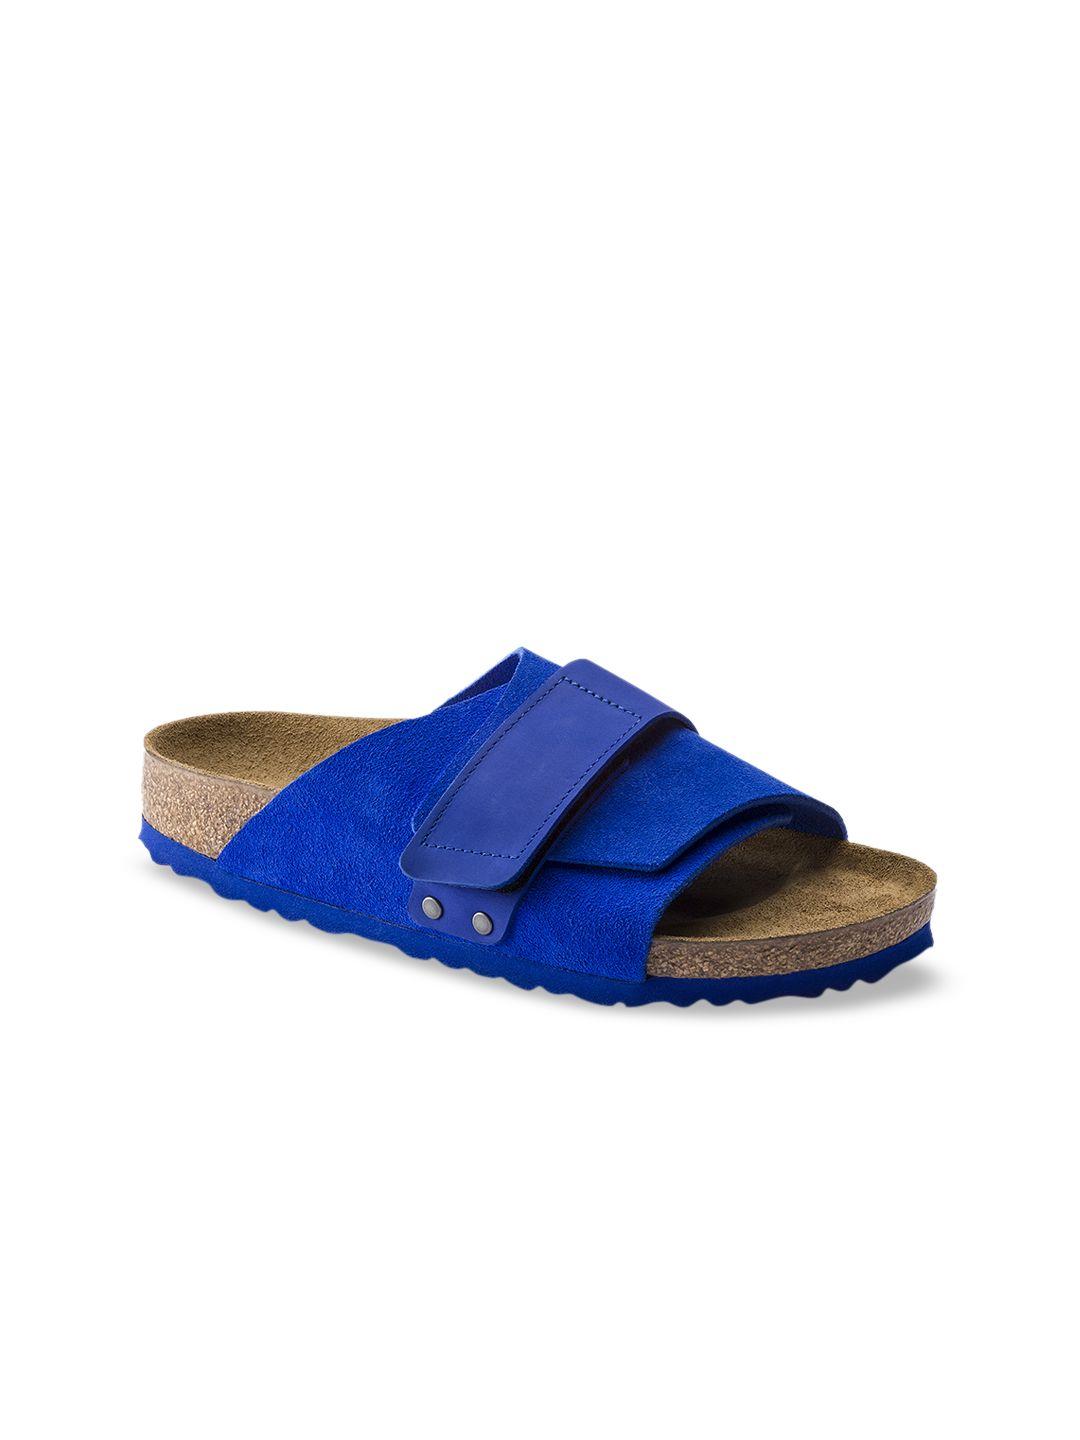 birkenstock unisex blue kyoto nubuck suede leather  regular width comfort sandals